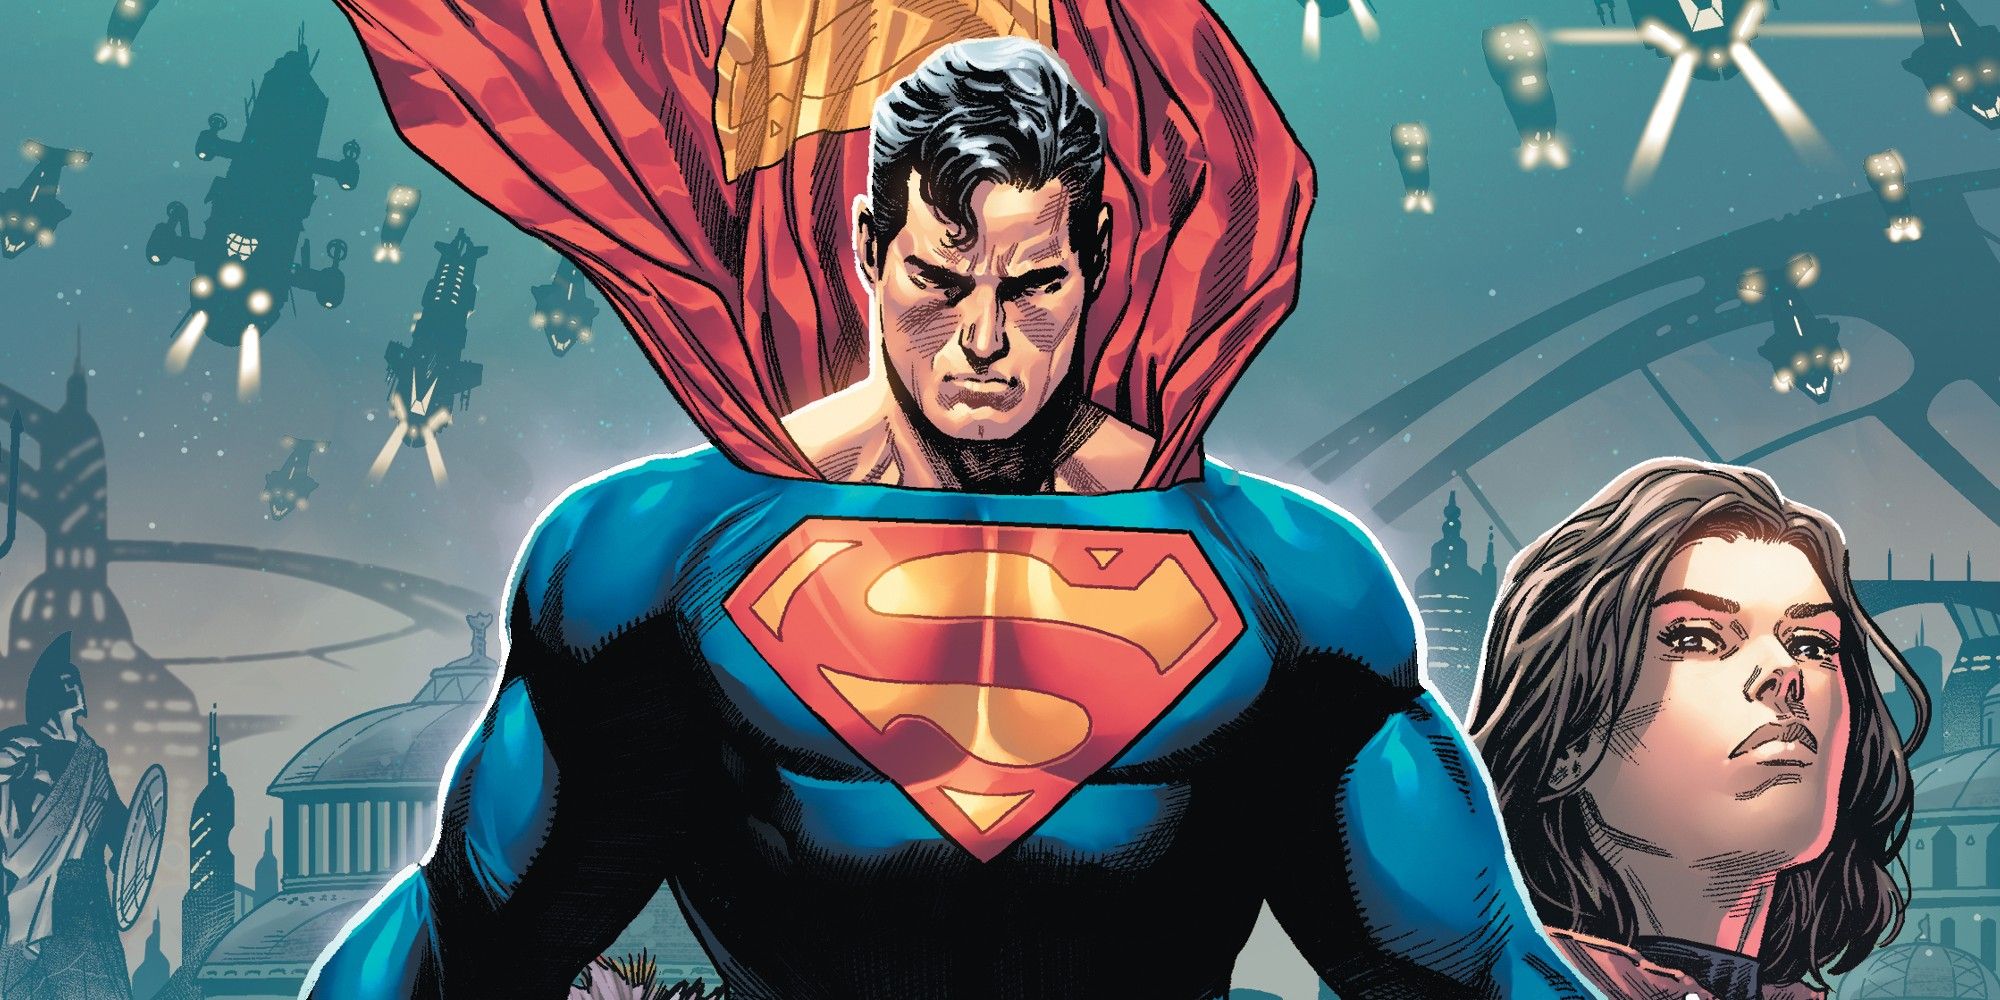 Capa de Quadrinhos do Super-Homem